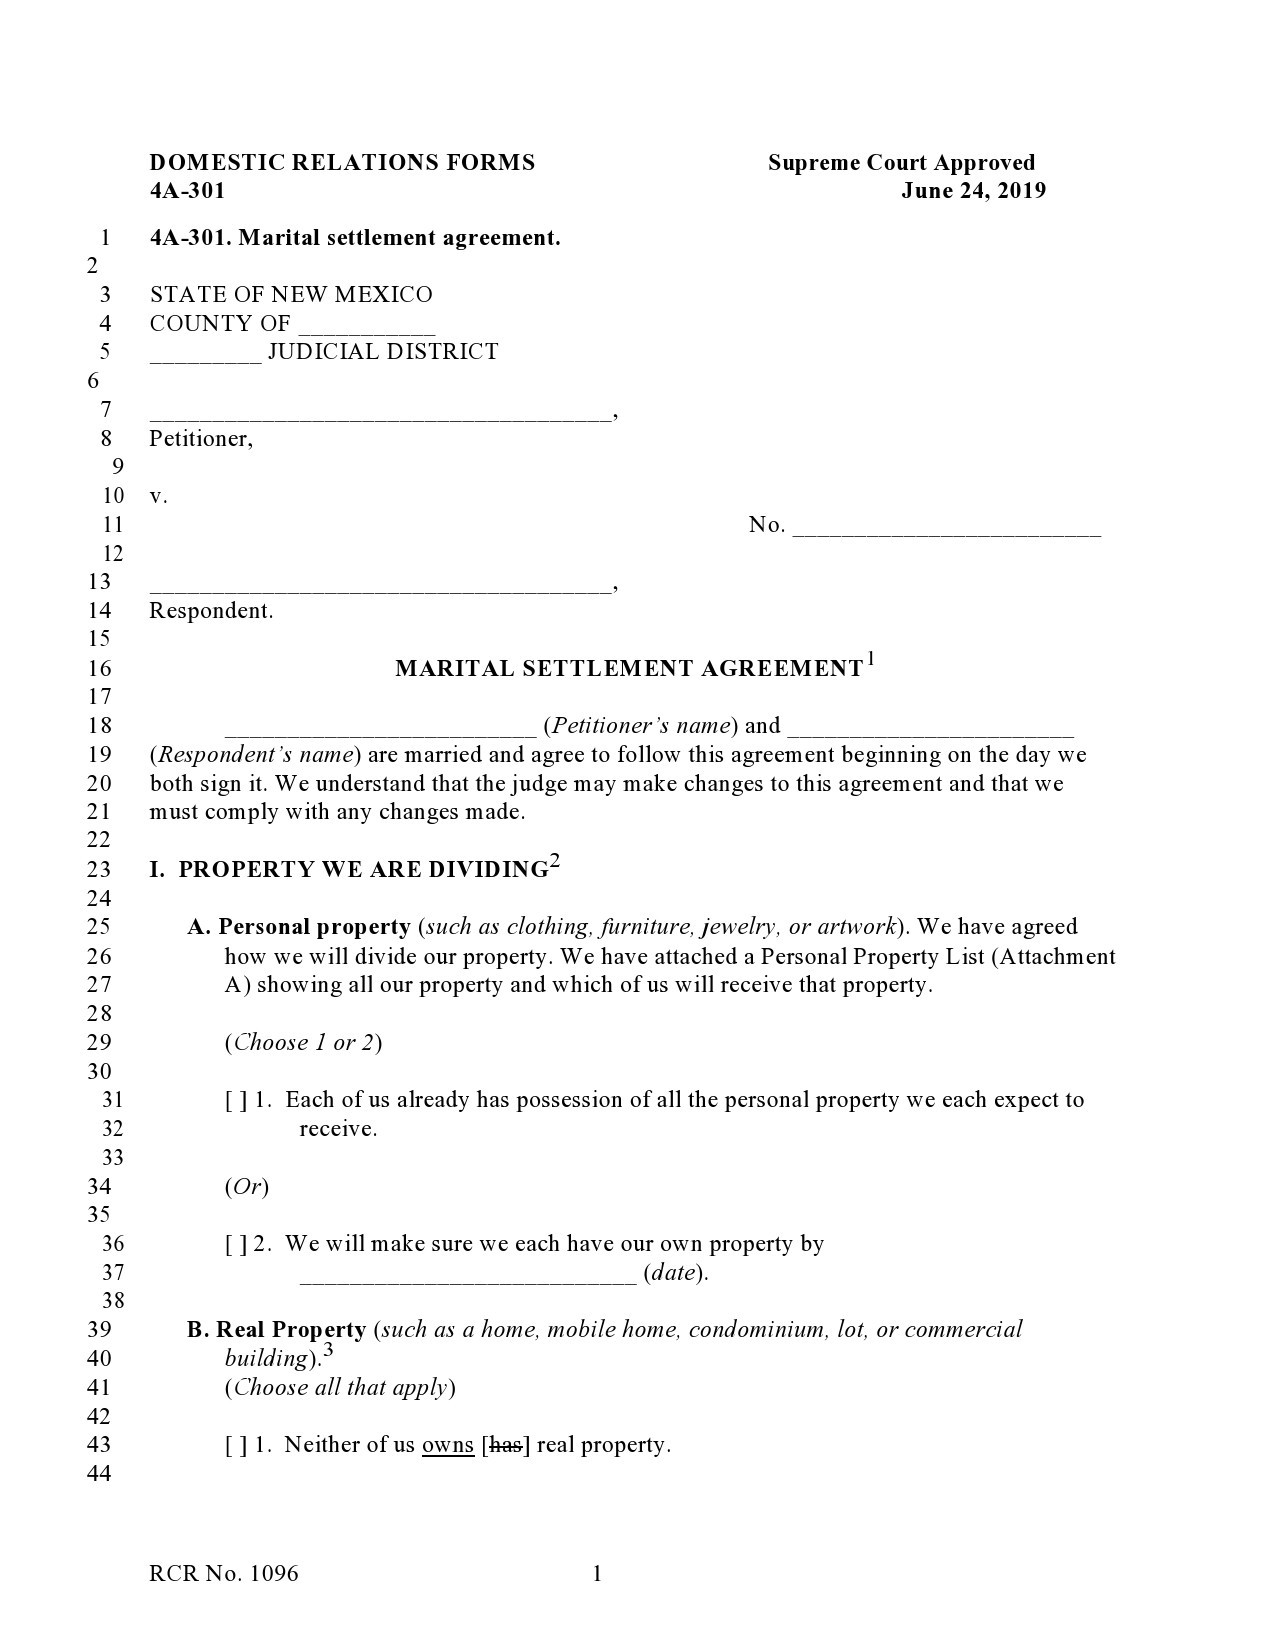 Free marital settlement agreement 23